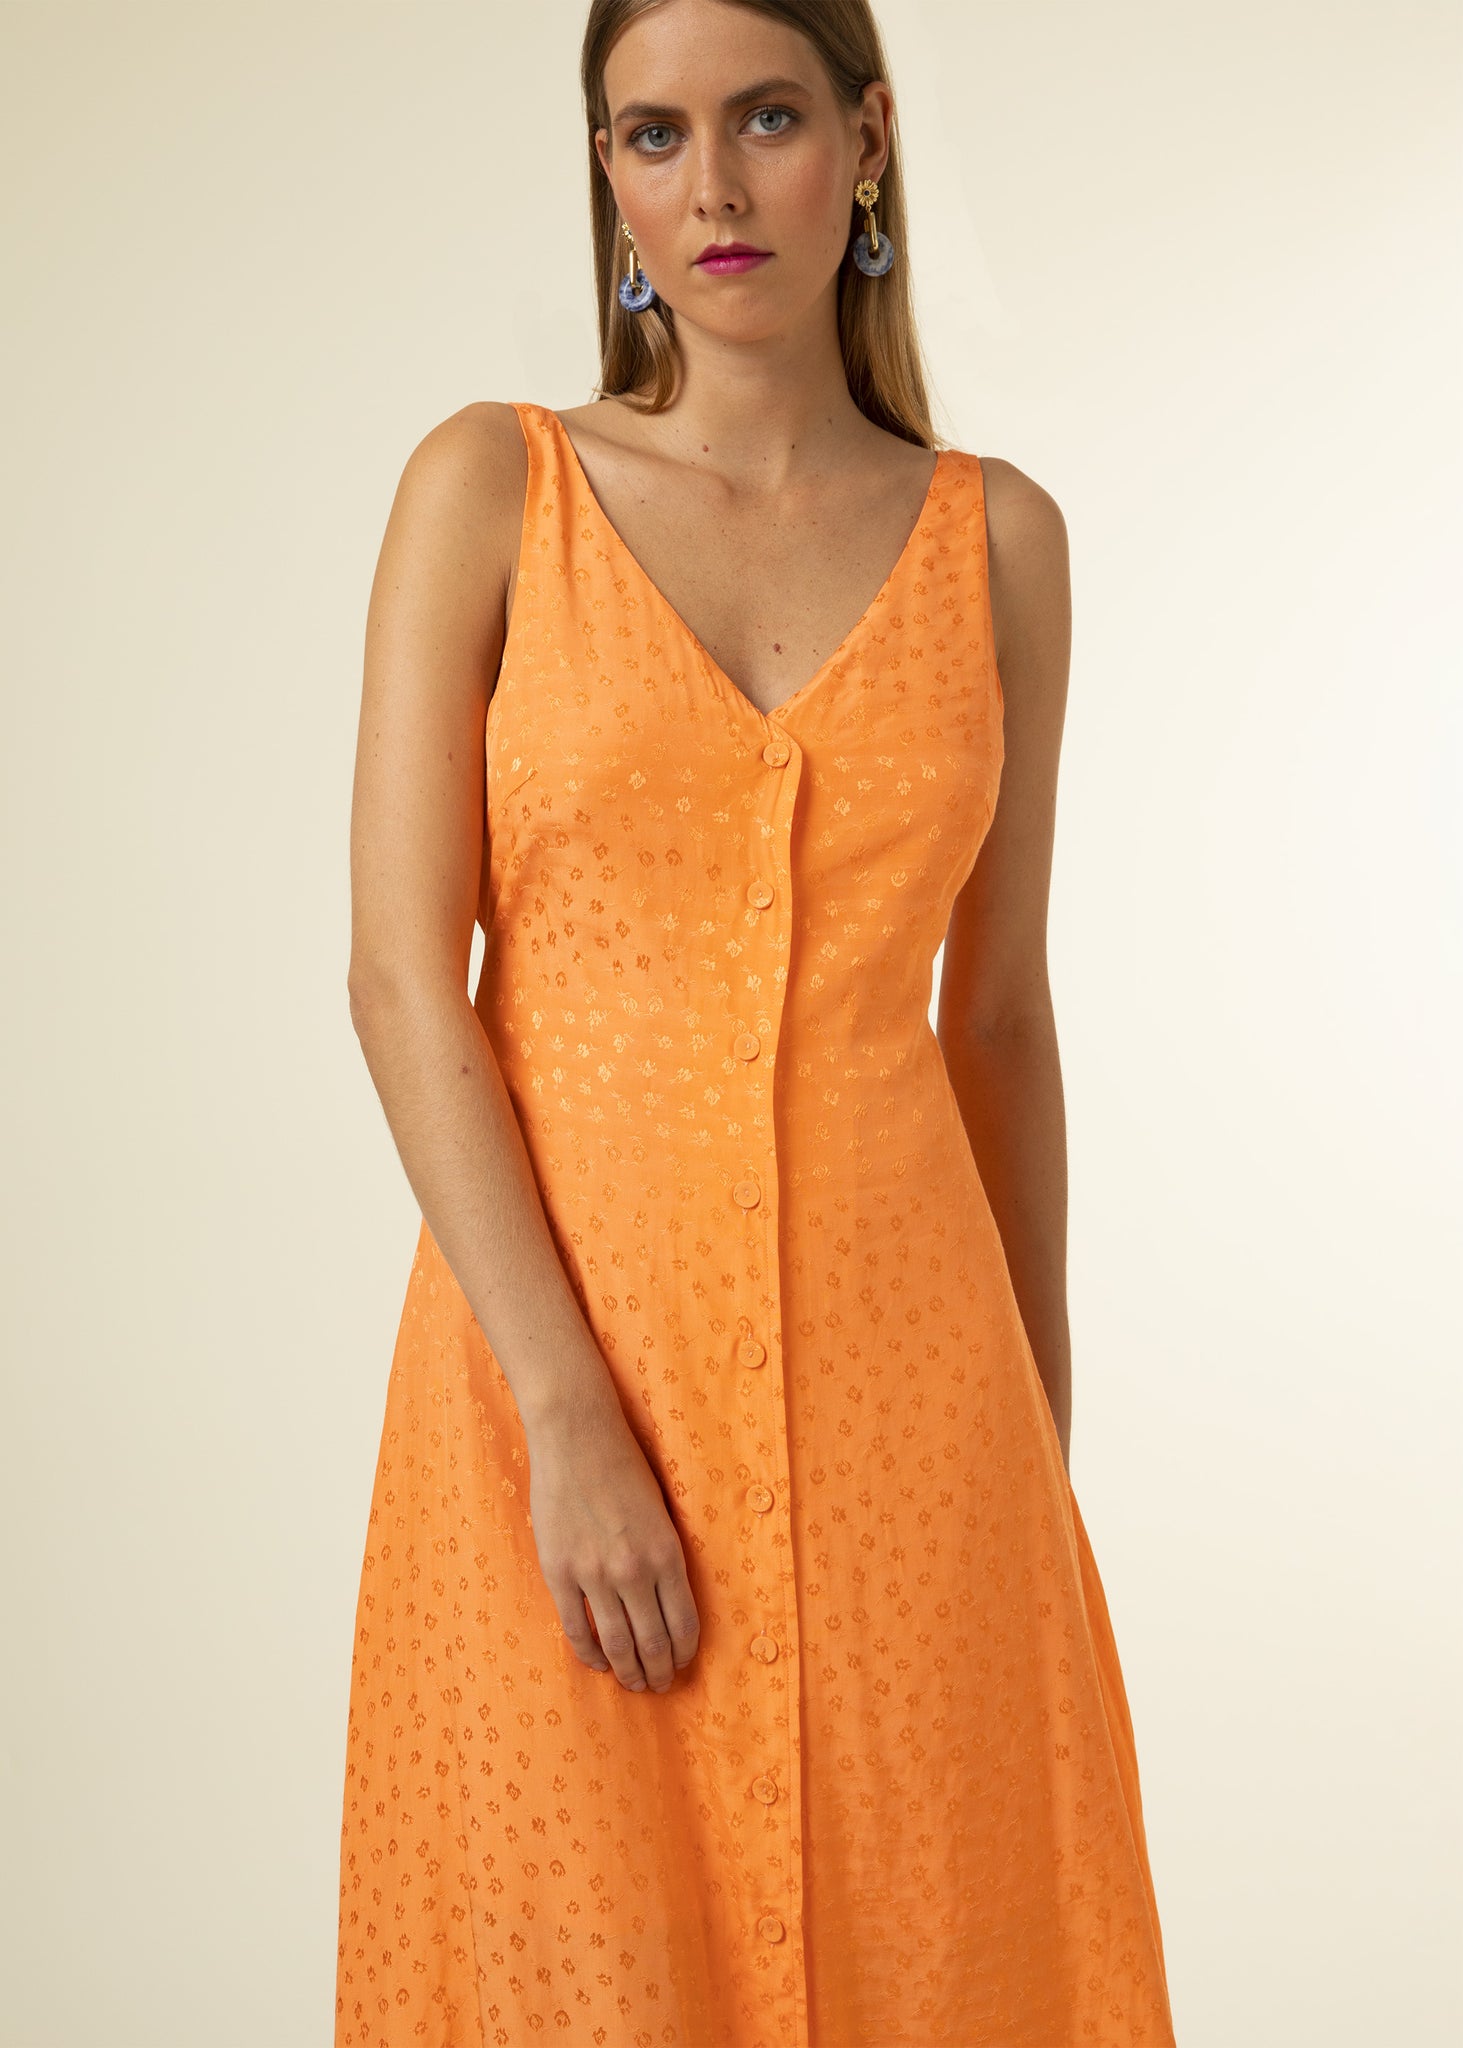 FRNCH - Cecile Dress - Orange